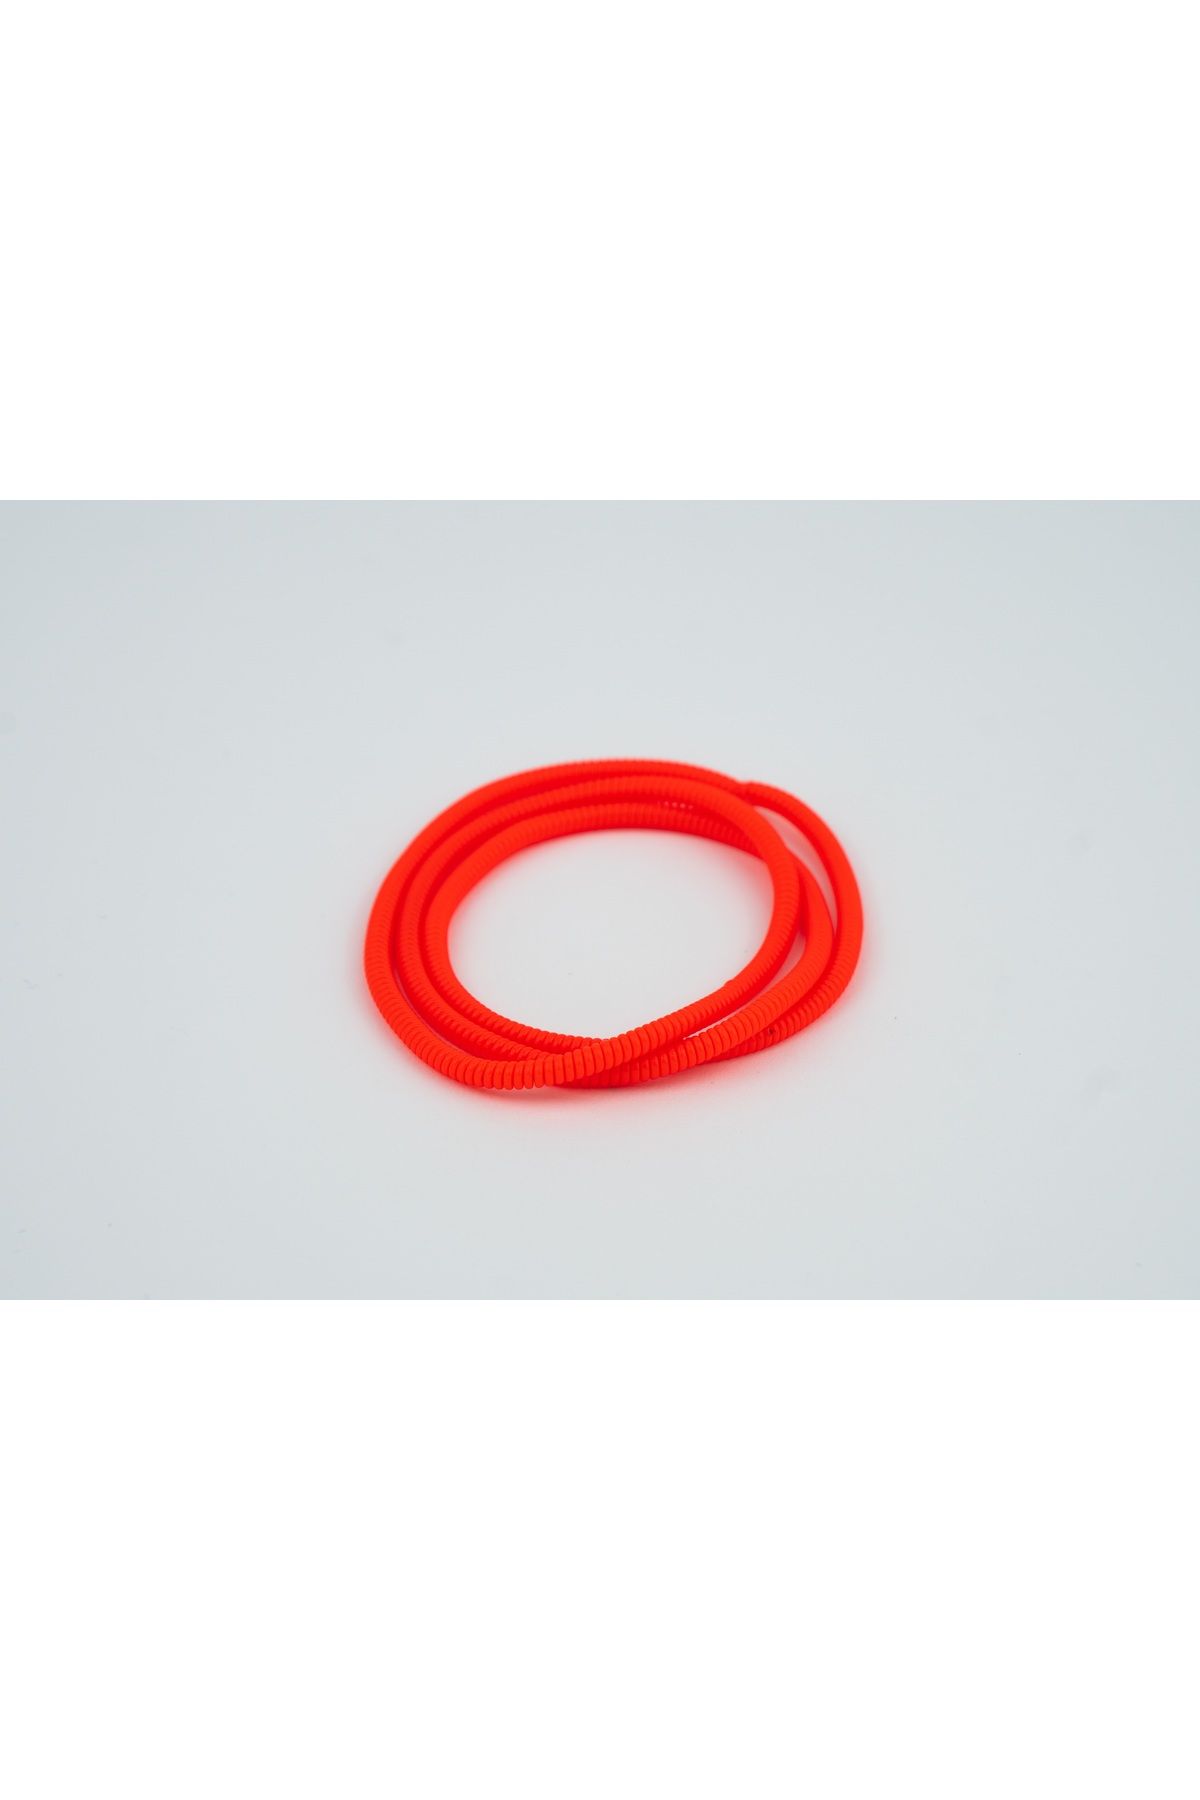 Spelt Kulaklık Kablosu Ince Kablo Kordon Koruyucu Spiral Sarma Kılıf Koruma Kırmızı 50cm 4 Adet